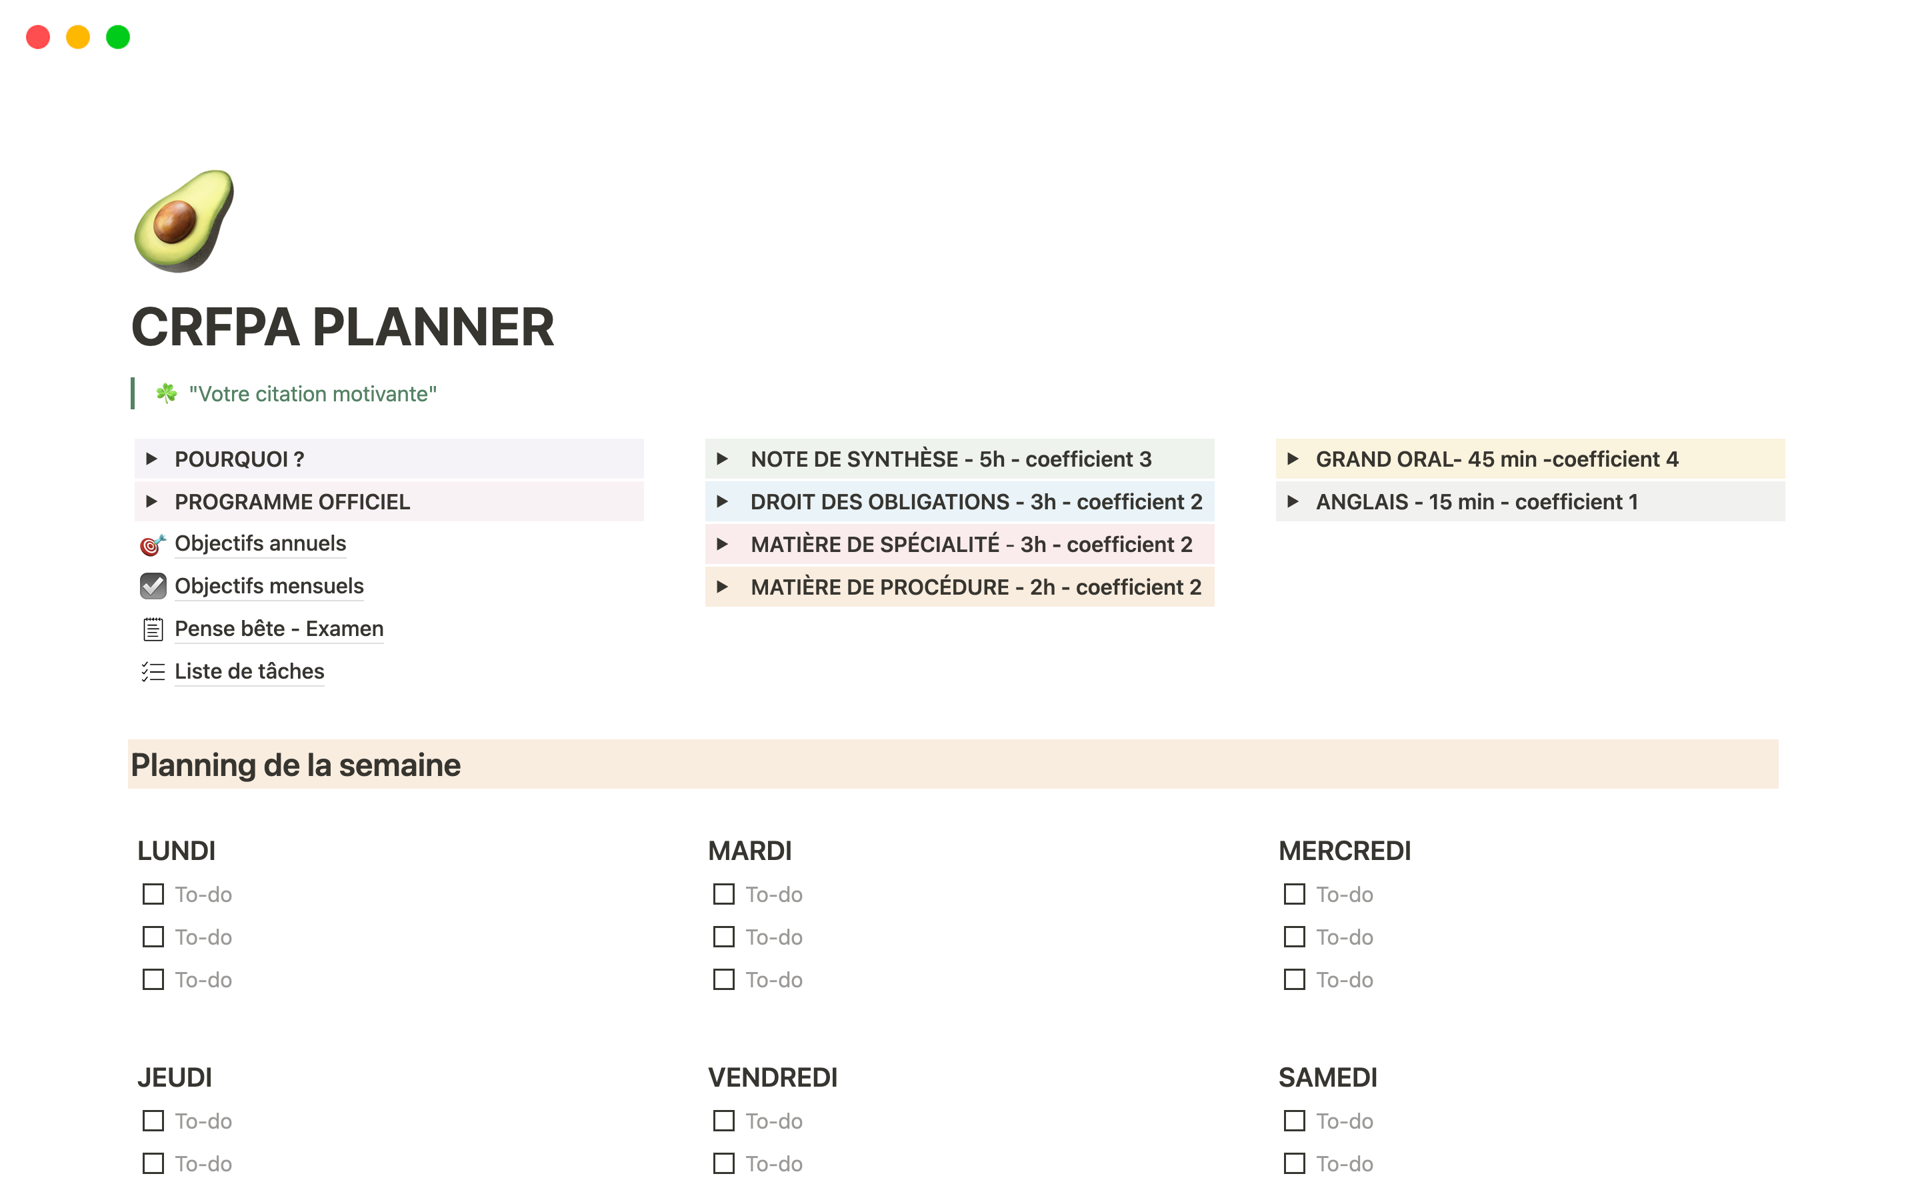 Grâce à ce modèle tu obtiendras différents trackers, différentes pages de suivis, un planning semainier, etc.